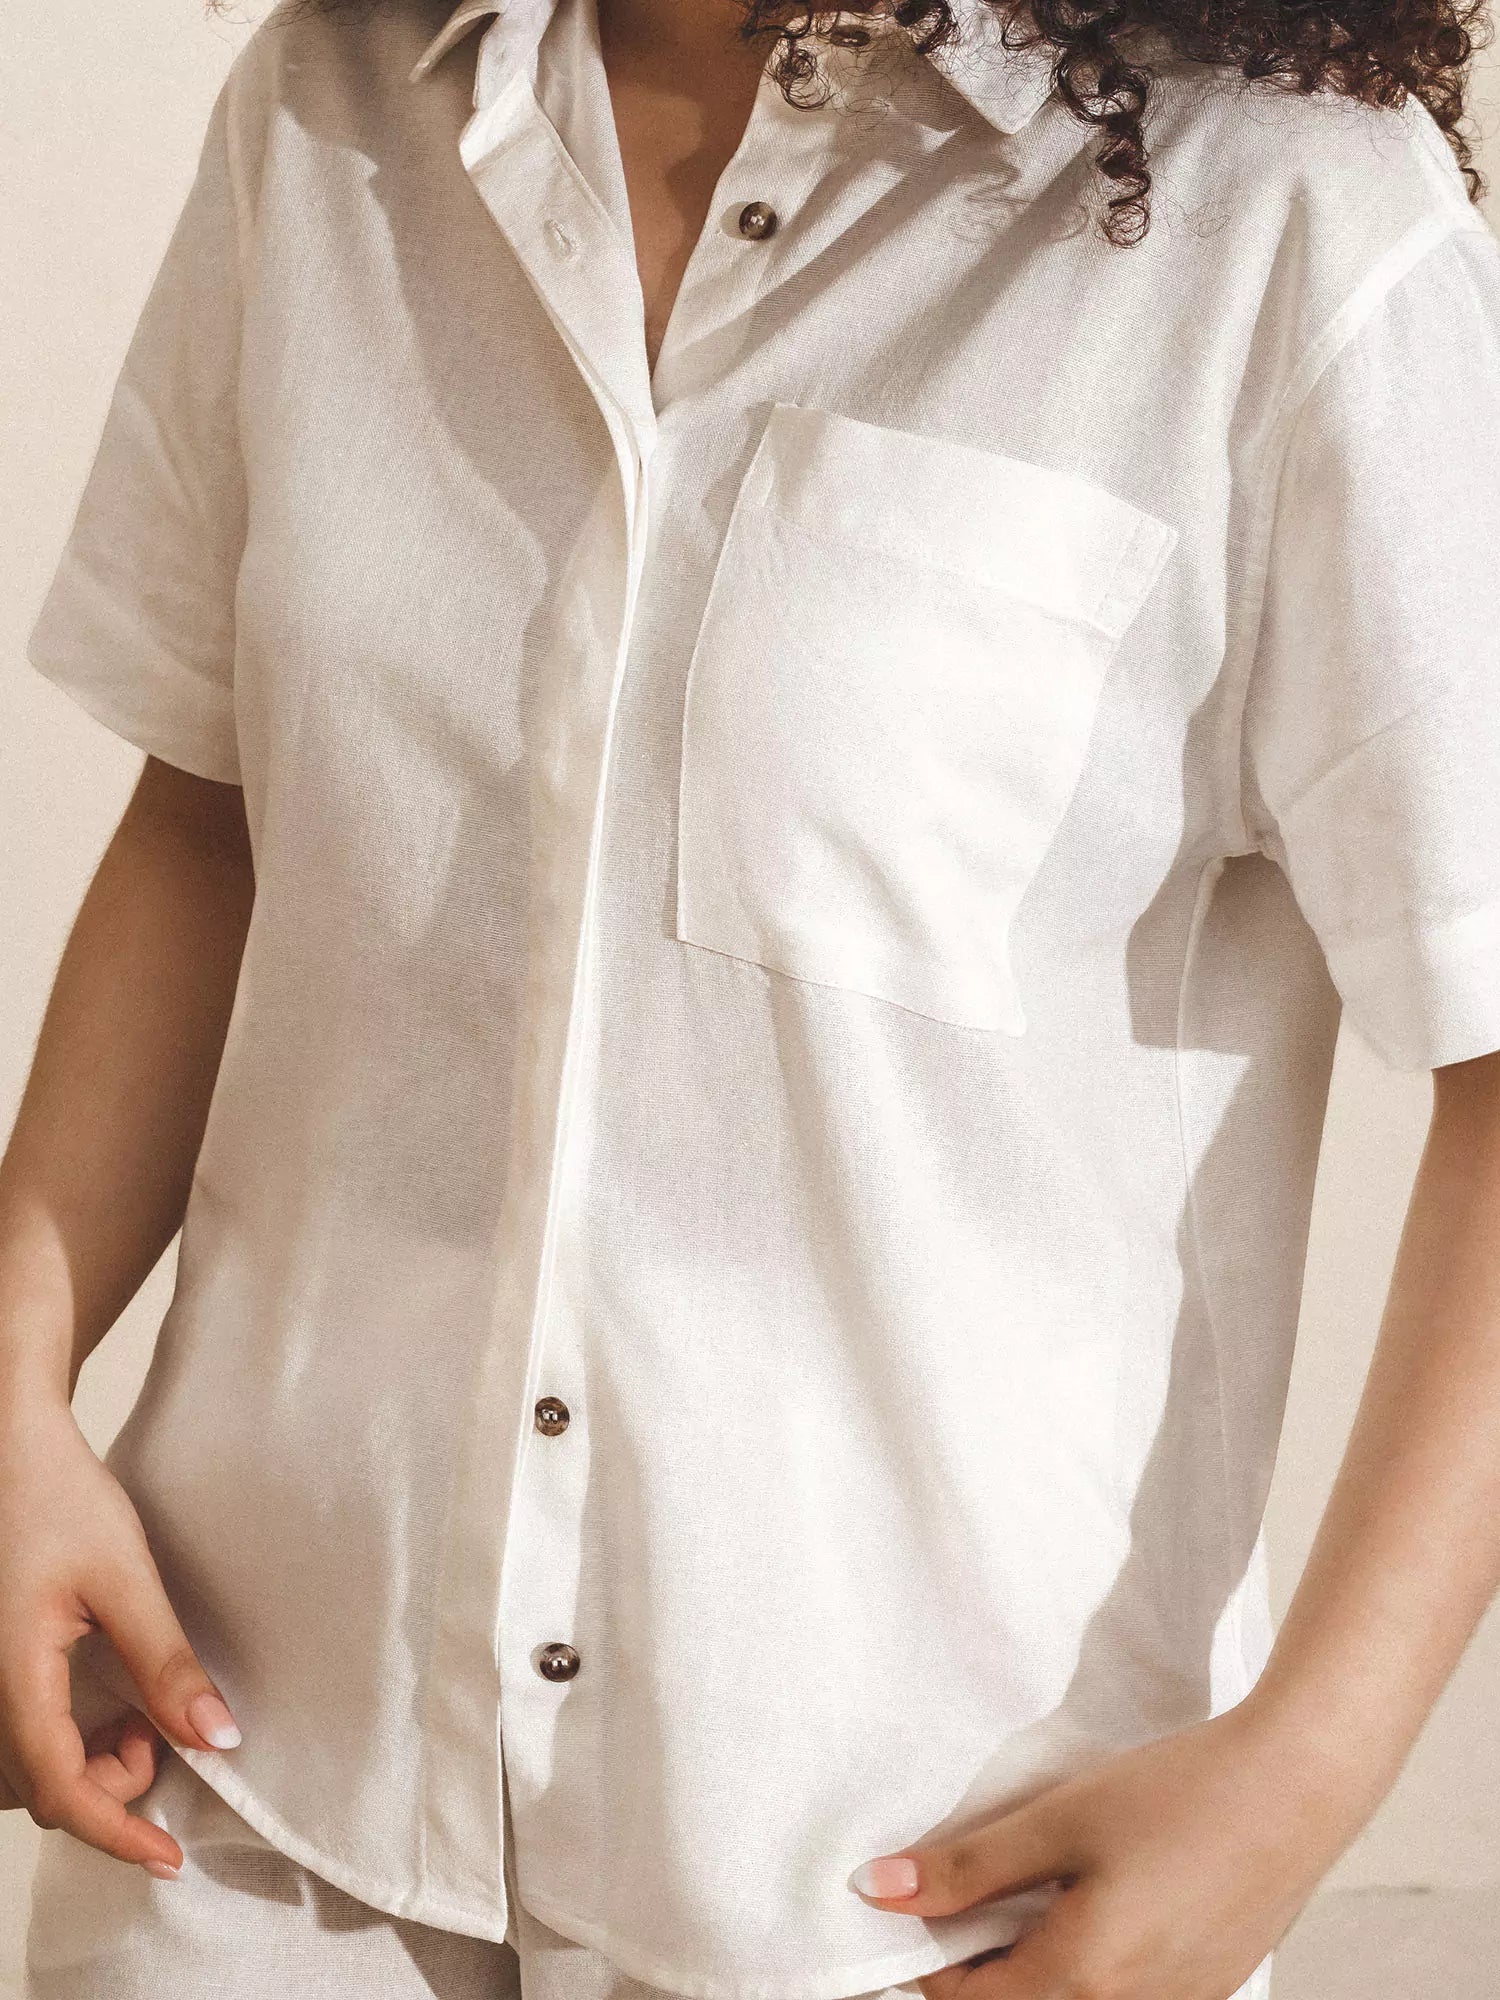 Camisa Manga Curta de Linho e Viscose FSC™ Branca Off White. Compre online moda sustentável e atemporal na Minimadeia. Roupas femininas estilosas, básicas e sustentáveis. Foto produto 07